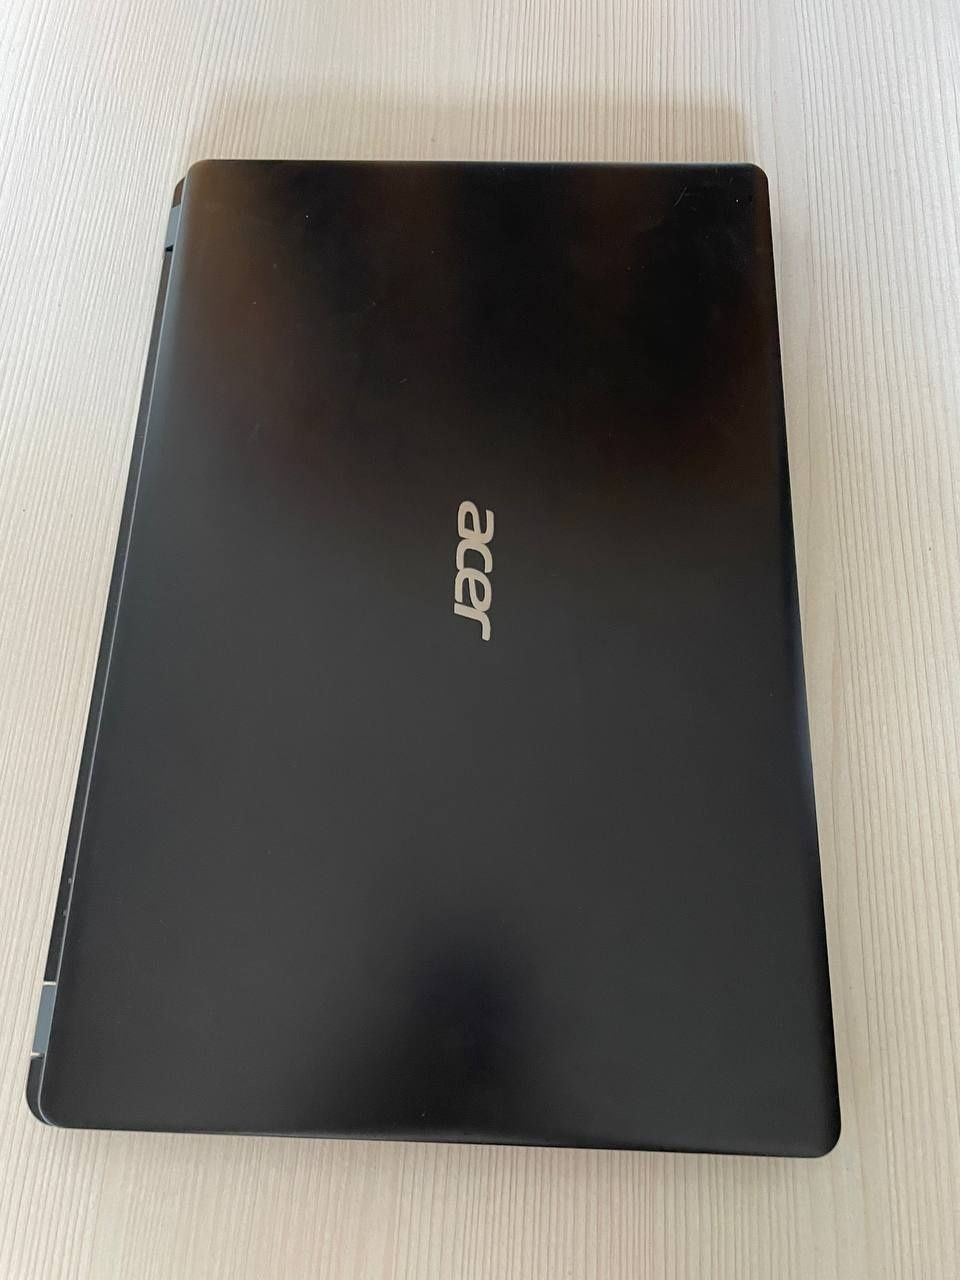 Ноутбук Acer A315, Ryzen 3 3200U, Radeon Vega 3, 8GB RAM